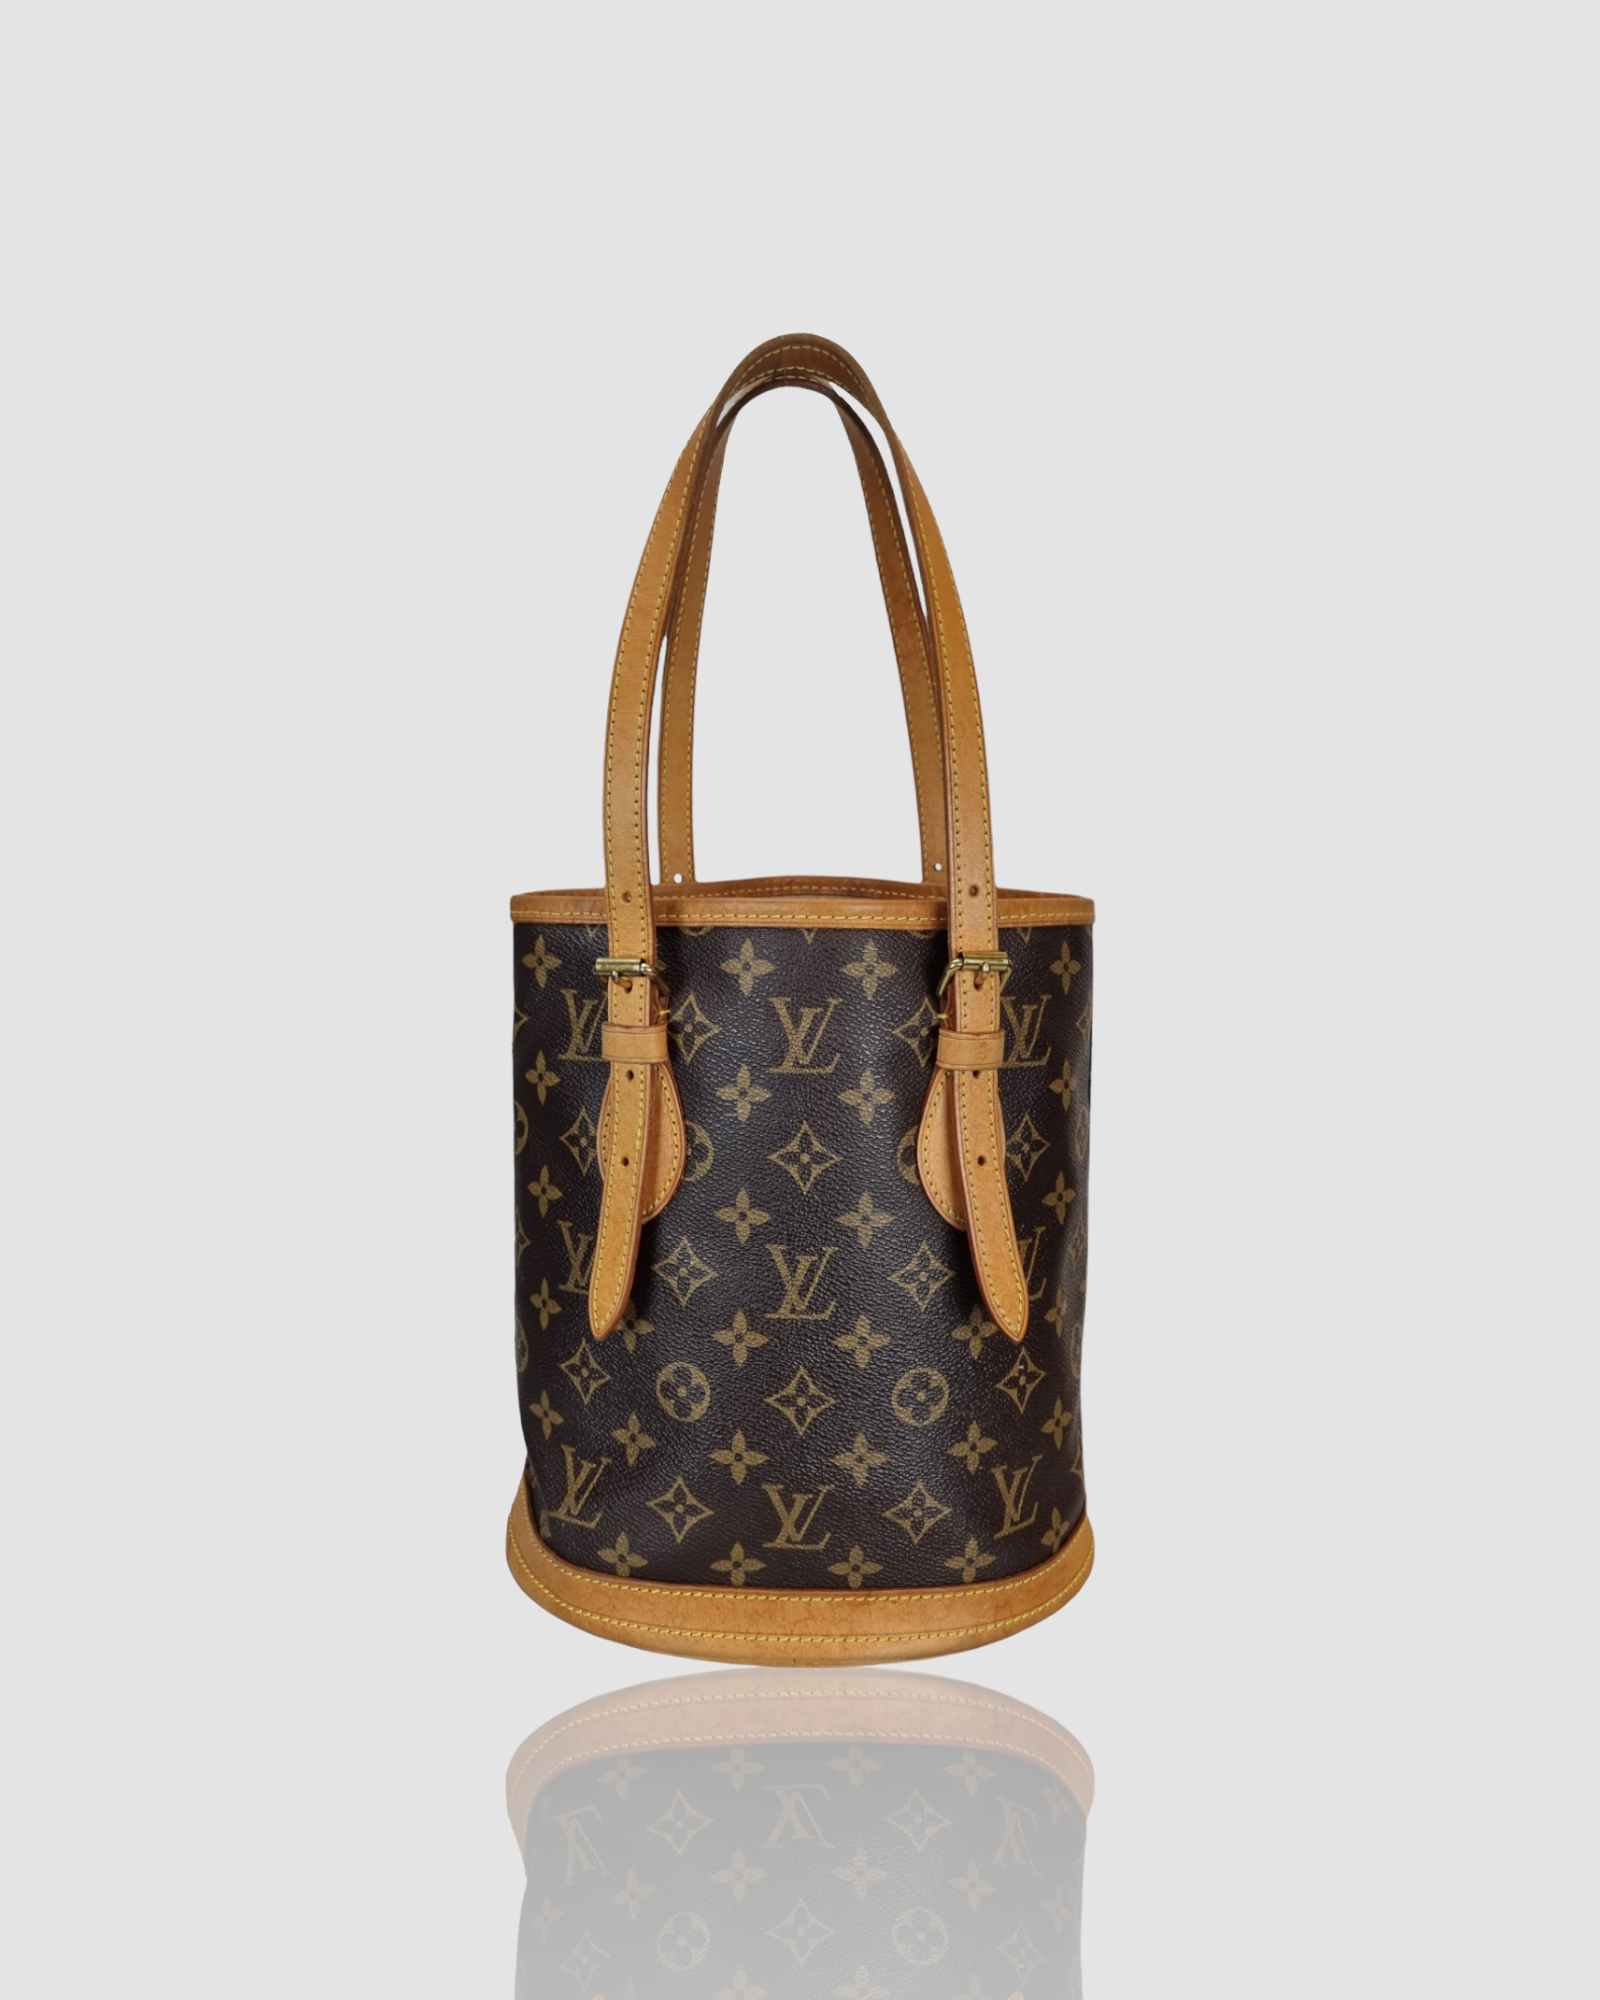 Louis Vuitton, Bags, Authentic Louis Vuitton Monogram Pm Bucket Bag